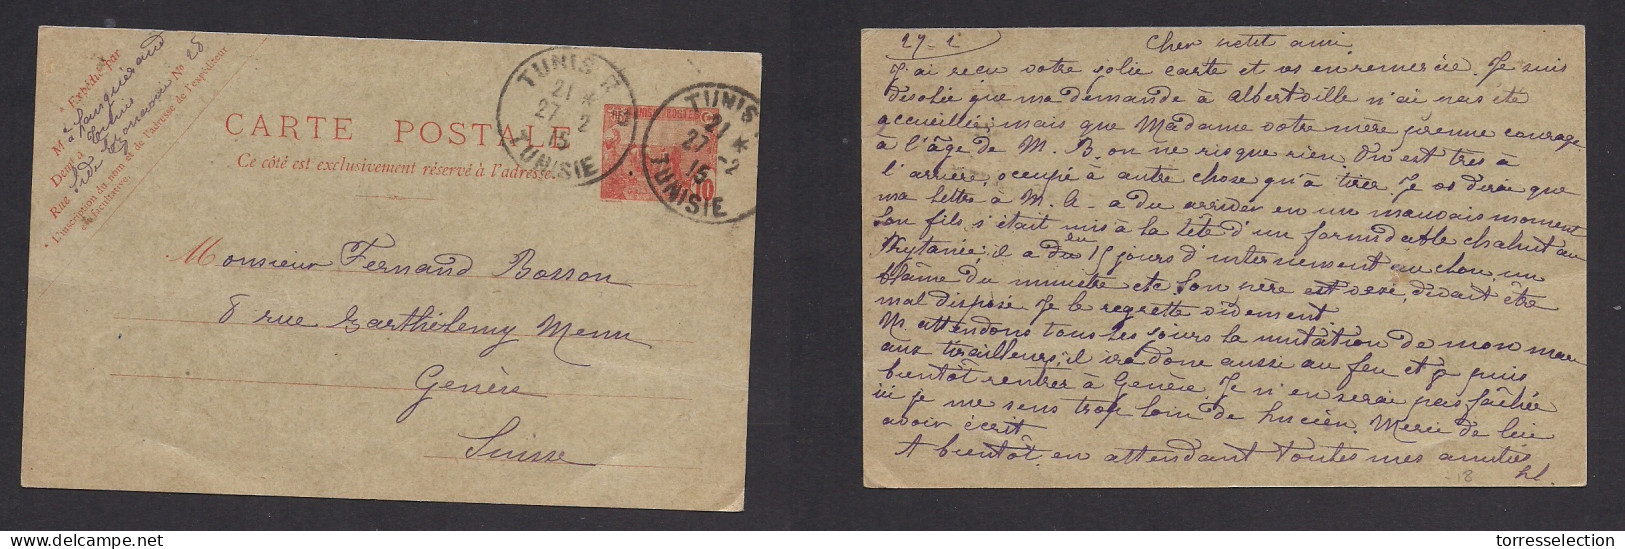 TUNISIA. 1915 (27 Febr) Tunis RP - Switzerland, Geneve. 10c Red Stat Card. VF Used. - Tunisia (1956-...)